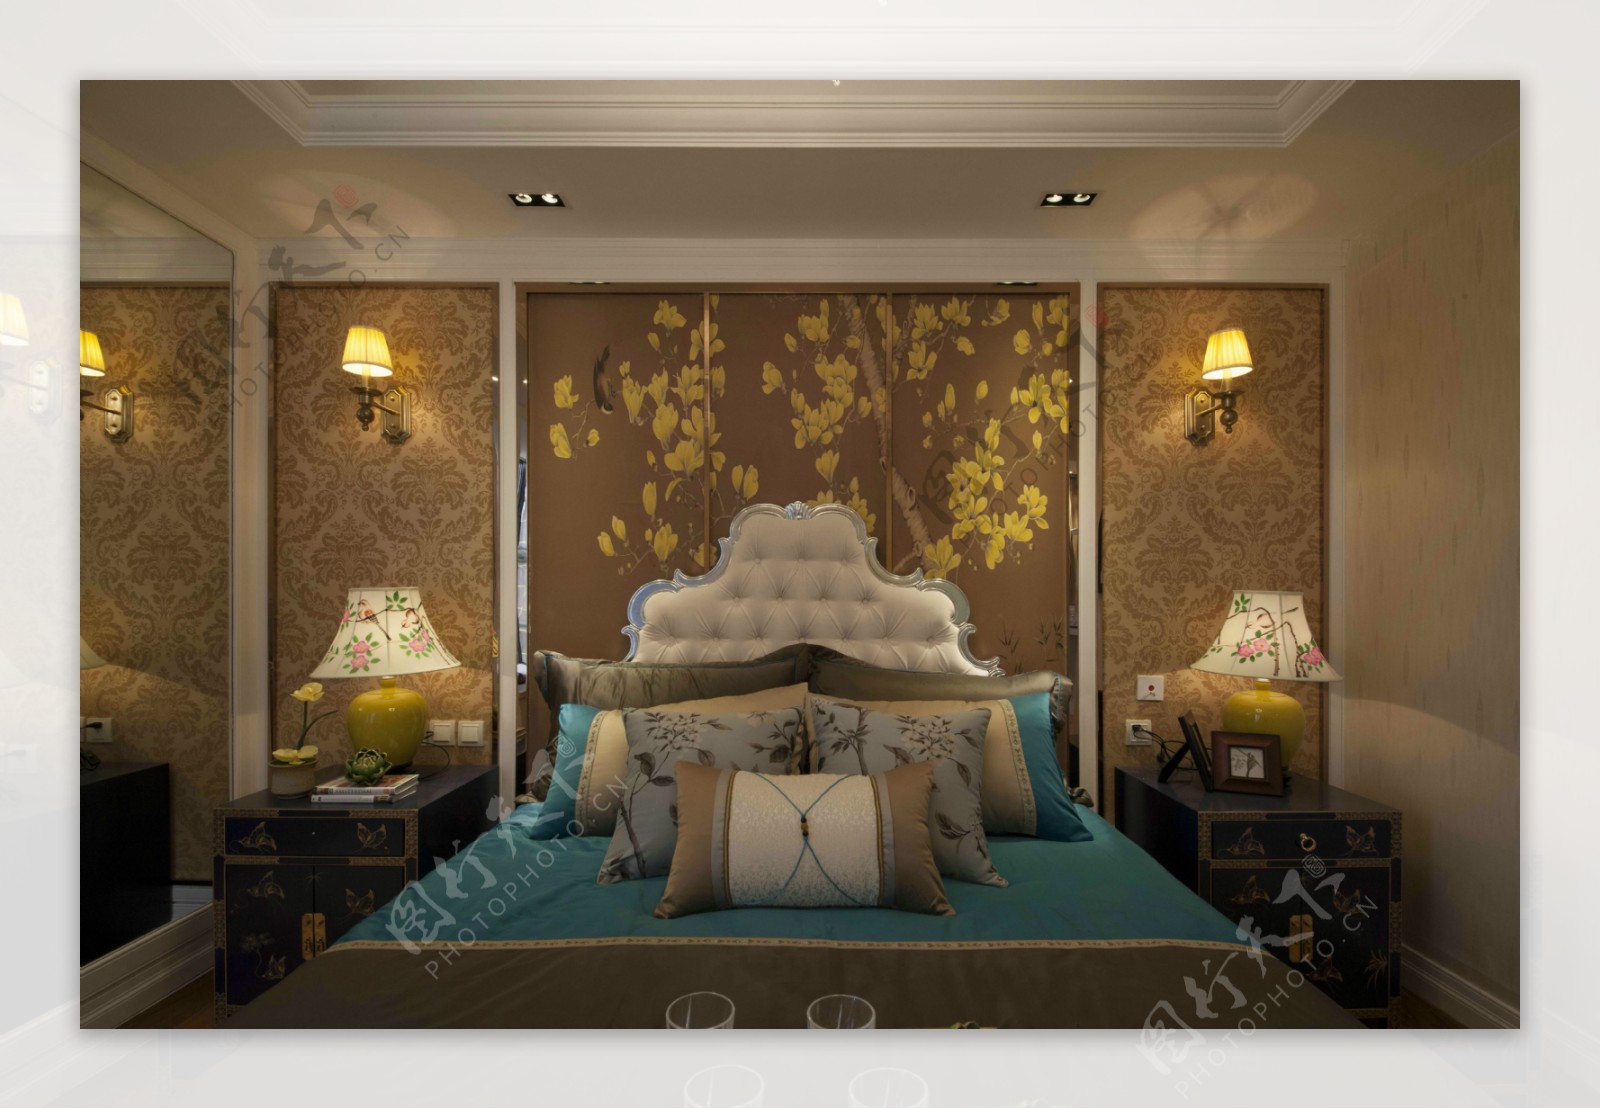 中式华丽室内卧室背景墙效果图